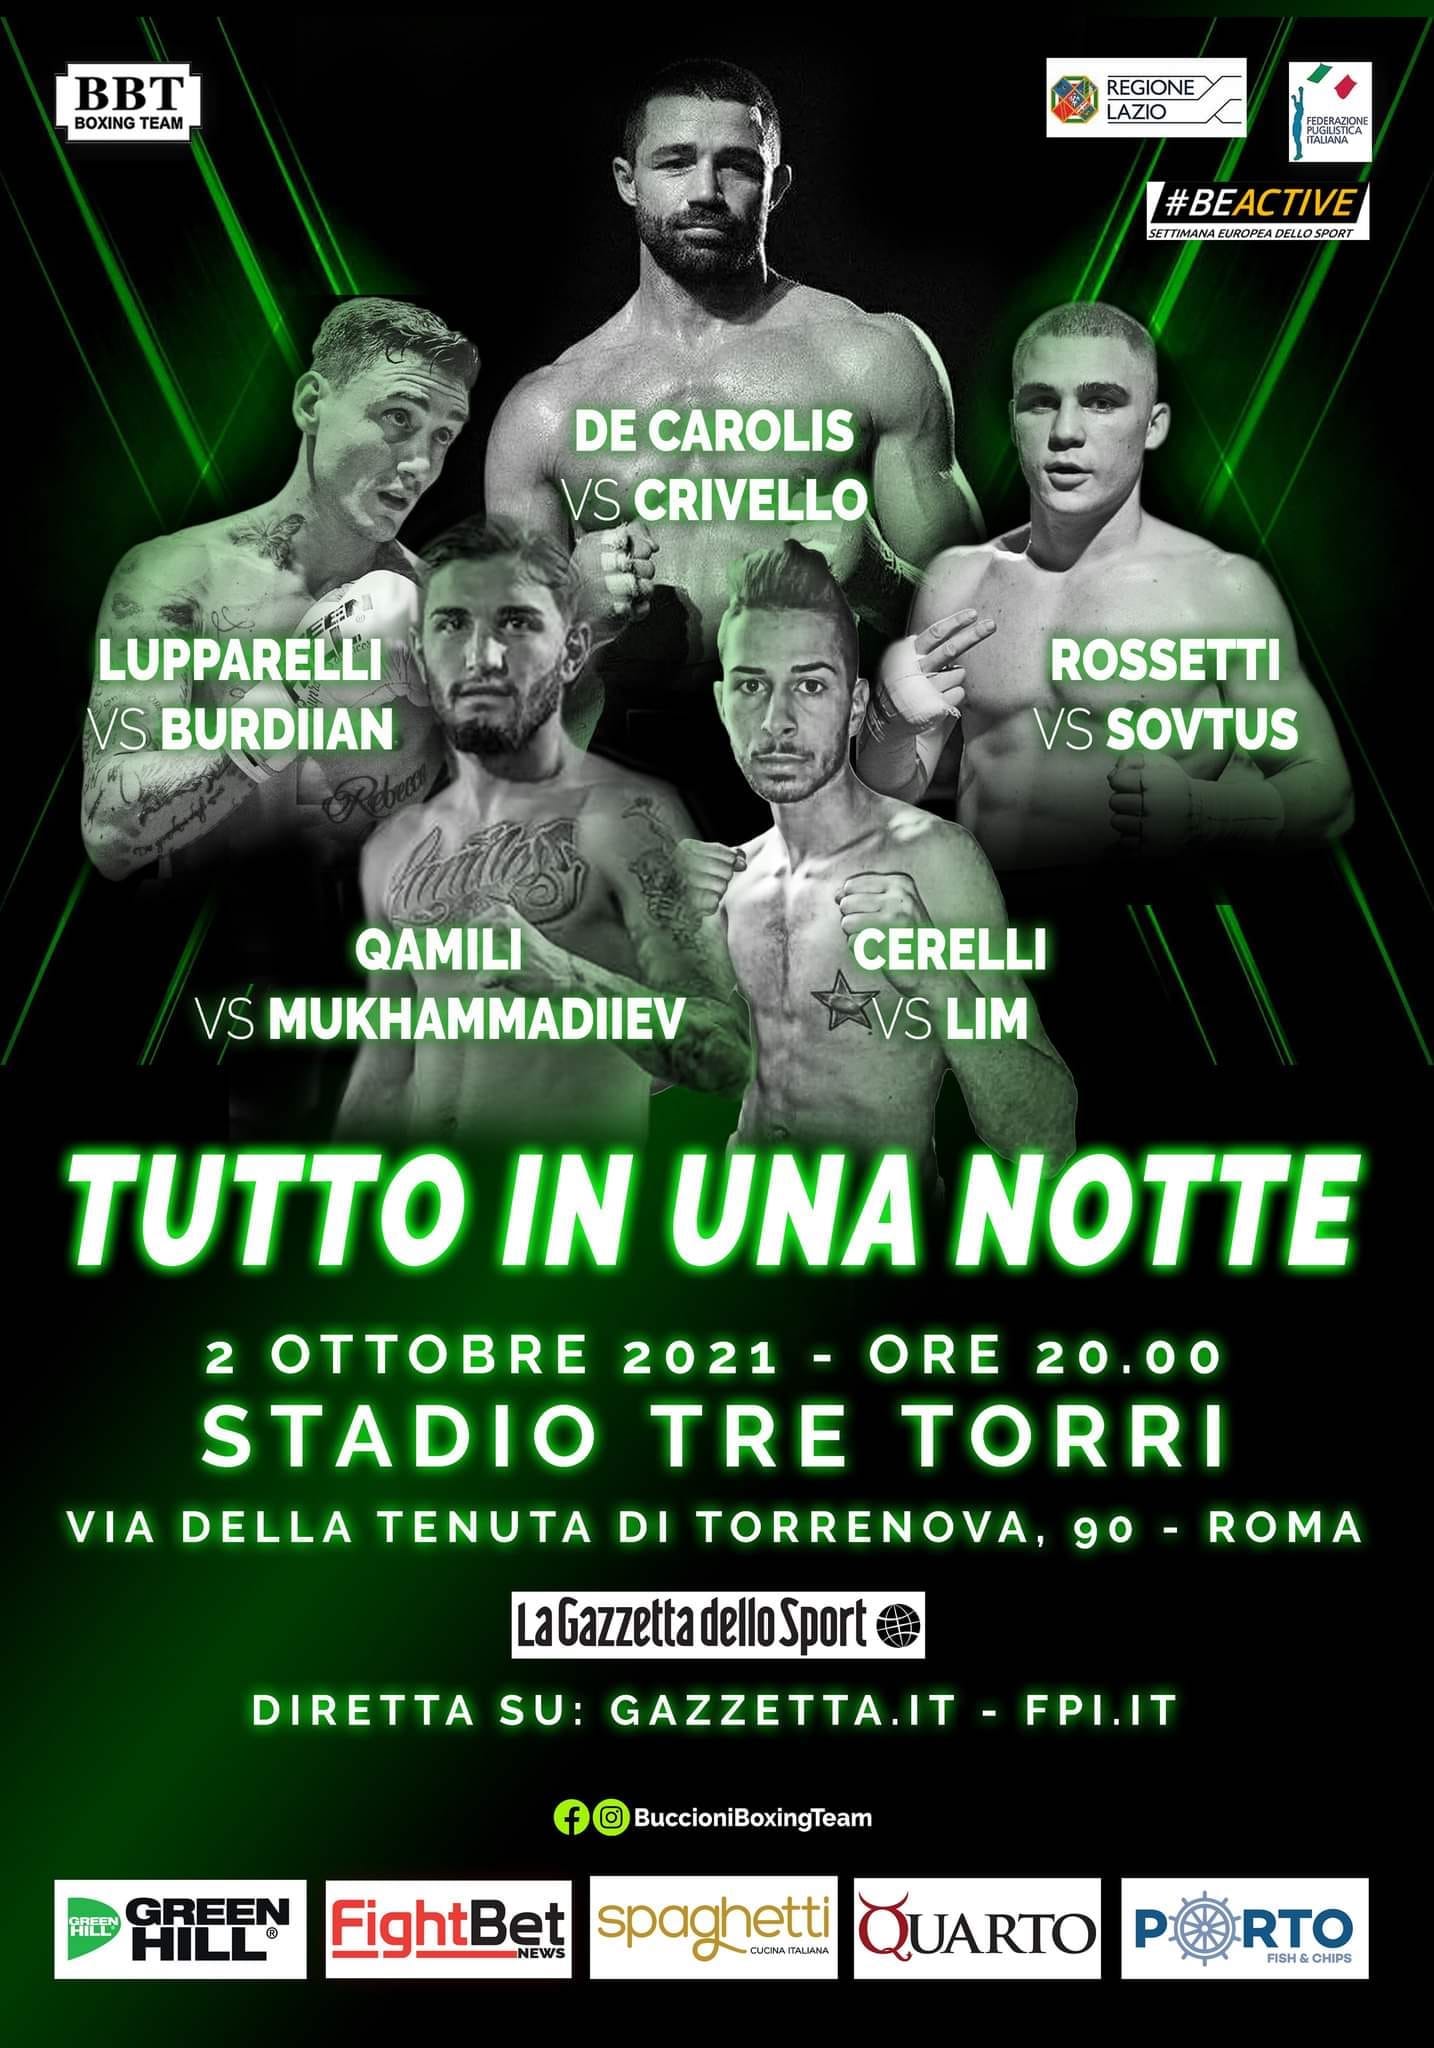 Sabato grande boxe in diretta su Gazzetta.it e Youtube FPIOfficialChannel: Main Event con De Carolis 